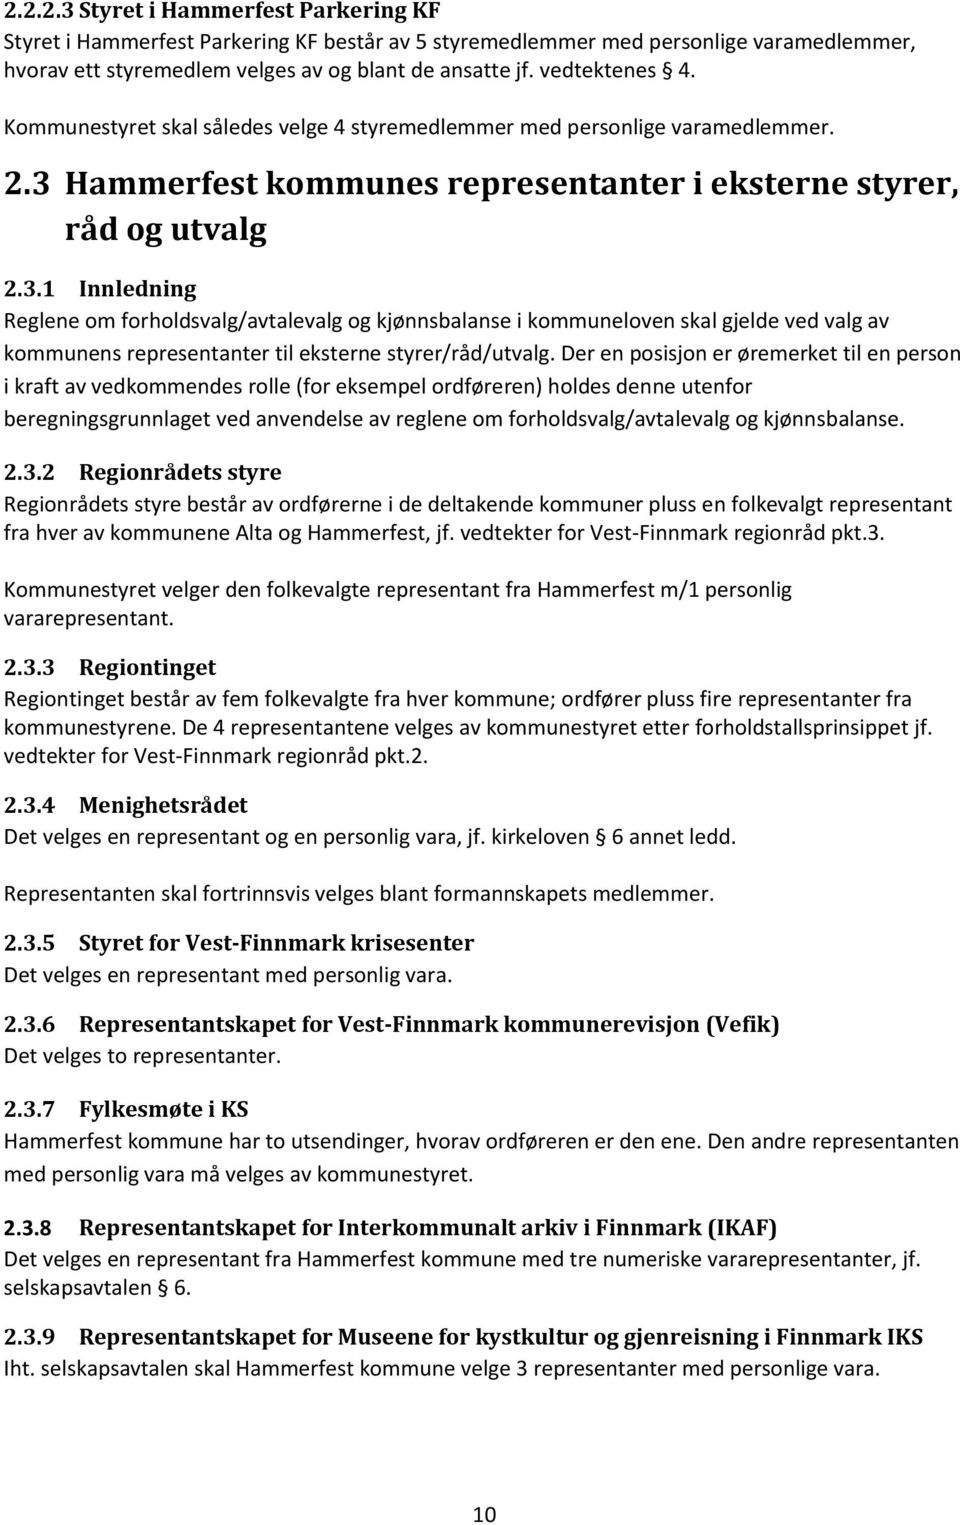 Hammerfest kommunes representanter i eksterne styrer, råd og utvalg 2.3.